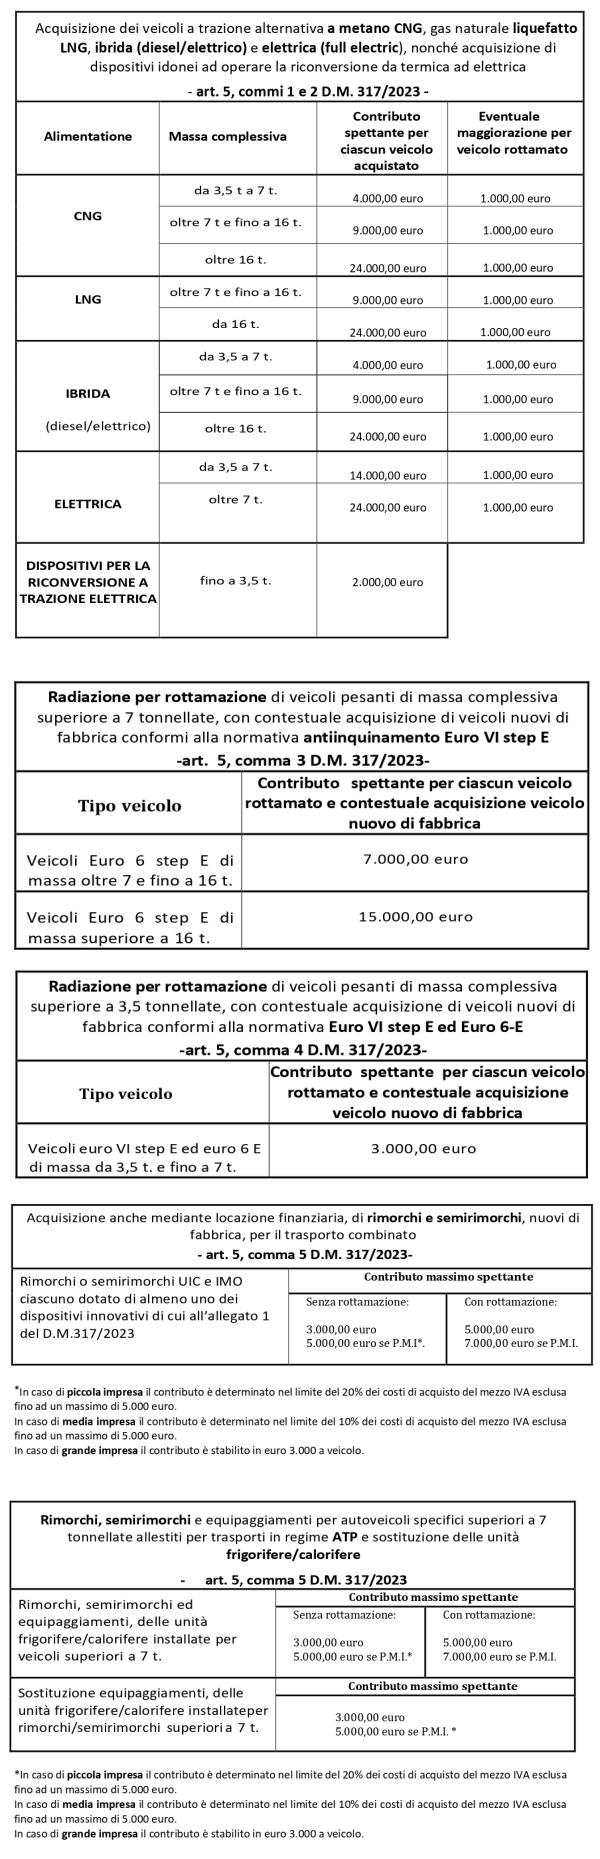 Tabella Incentivi Autotrasporto_page-0011-downjpg